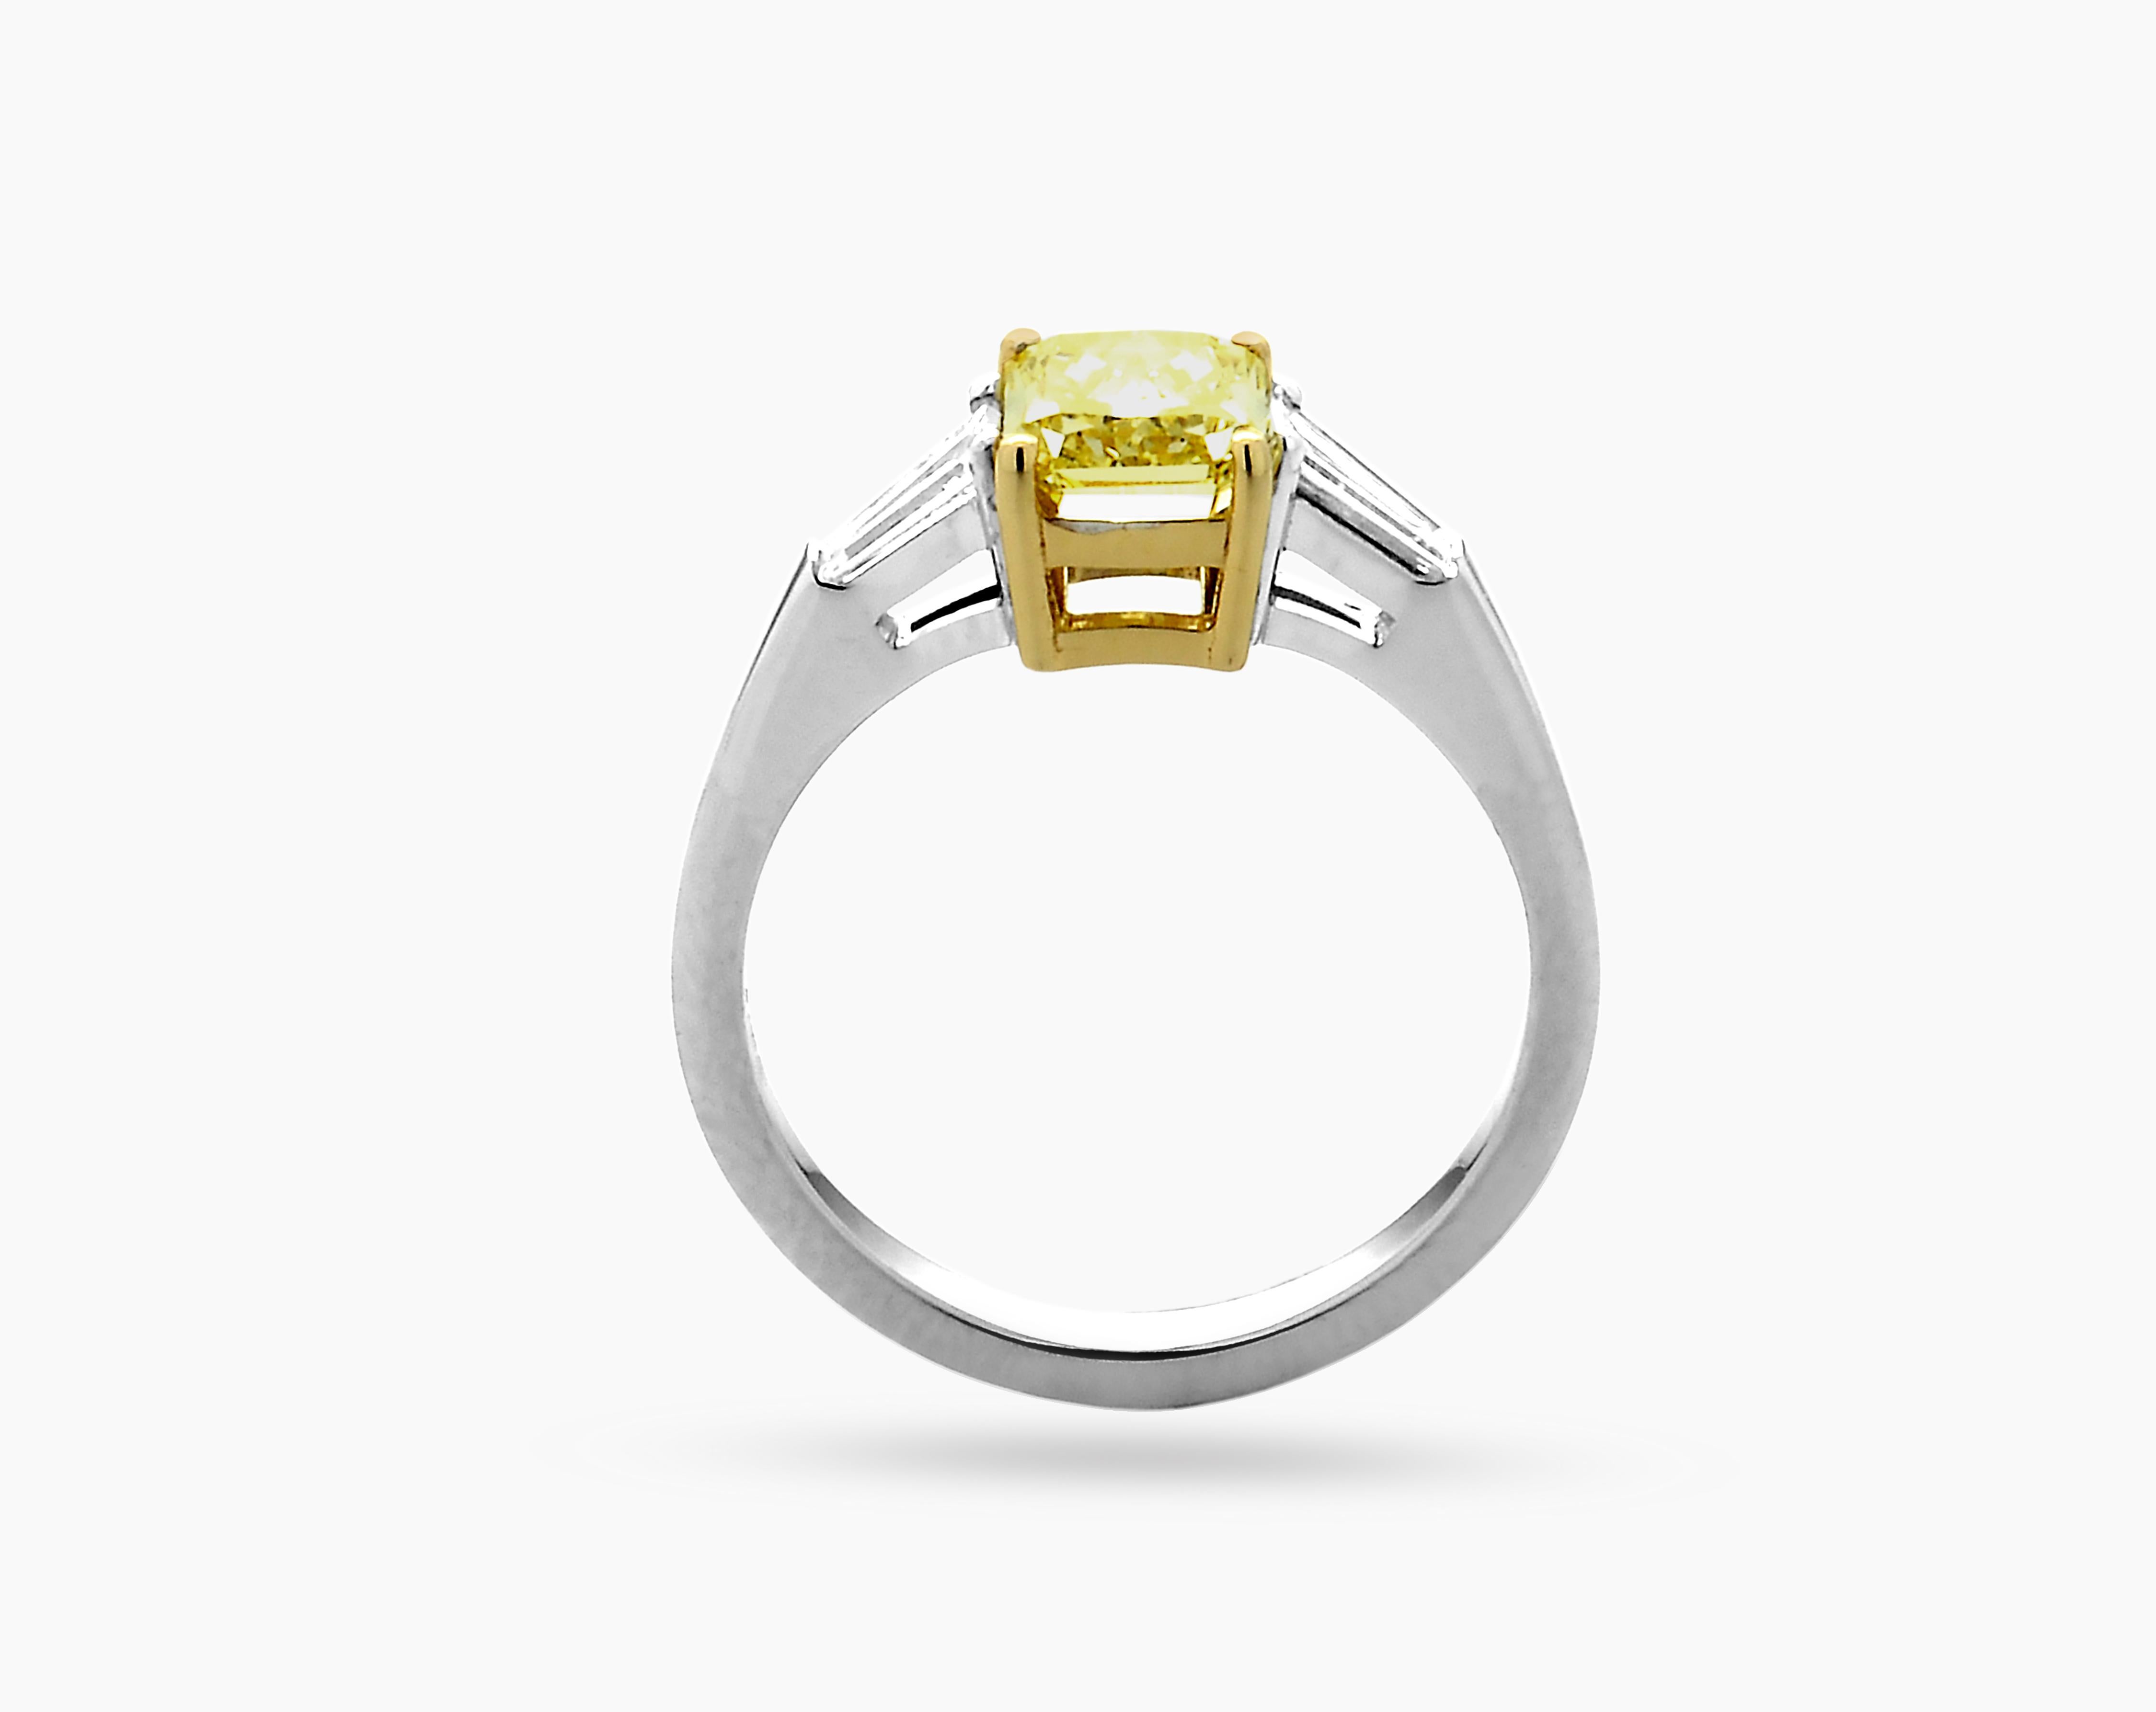  HRD (Antwerp diamond high council) zertifizierter VS2 Natural Fancy Vivid Yellow Diamant 1,50 Karat Verlobungsring in 18k Weißgold. Verlobungsring mit 3 Steinen im Radiant-Schliff und einem lebhaften gelben Diamanten VS2 HRD in der Mitte von CARON